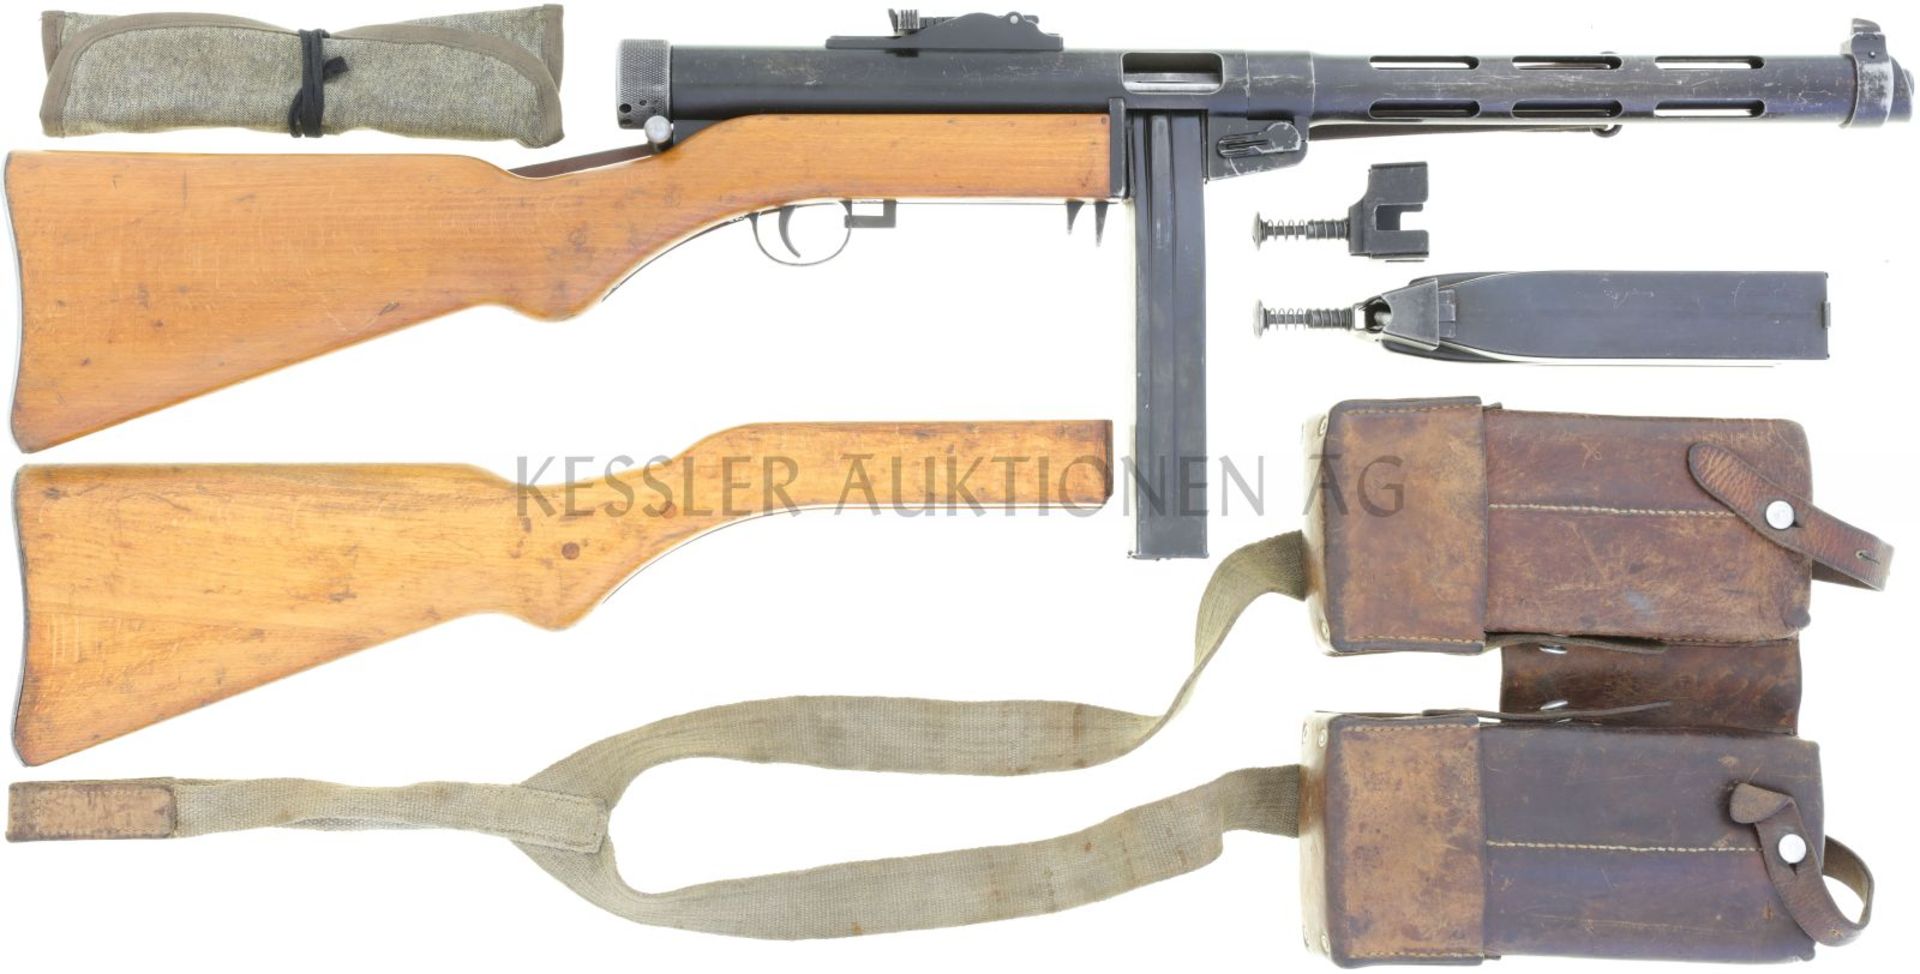 Maschinenpistole, Tikkakoski Suomi, MP 43, Kal. 9mmP LL 310mm, TL 860mm. Verschluss zuschiessend,